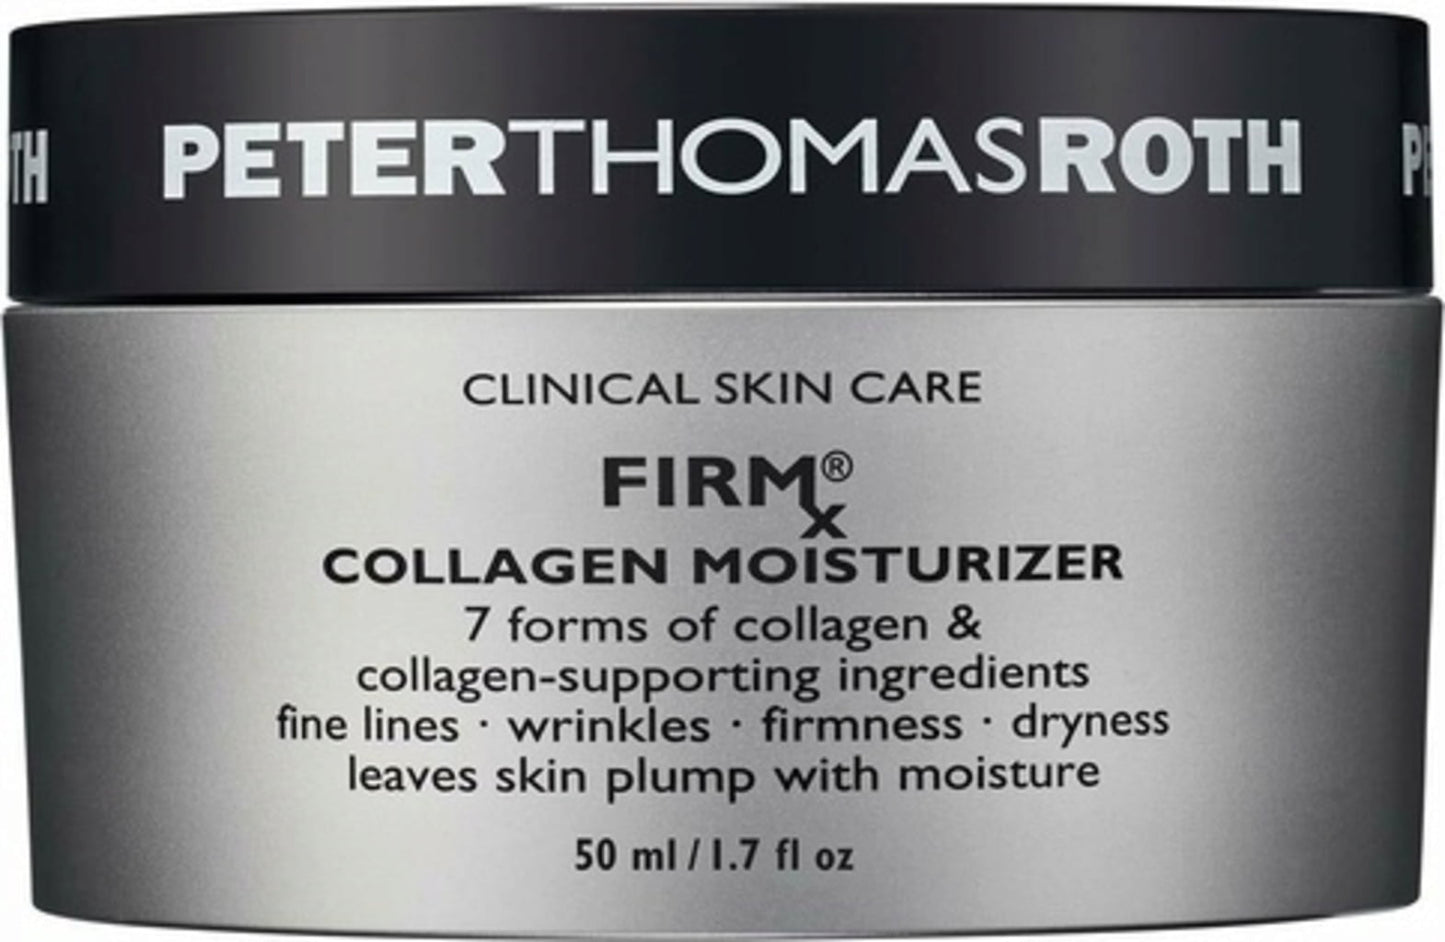 Peter Thomas Roth - Firmx Collagen Moisturizer - 50 Ml